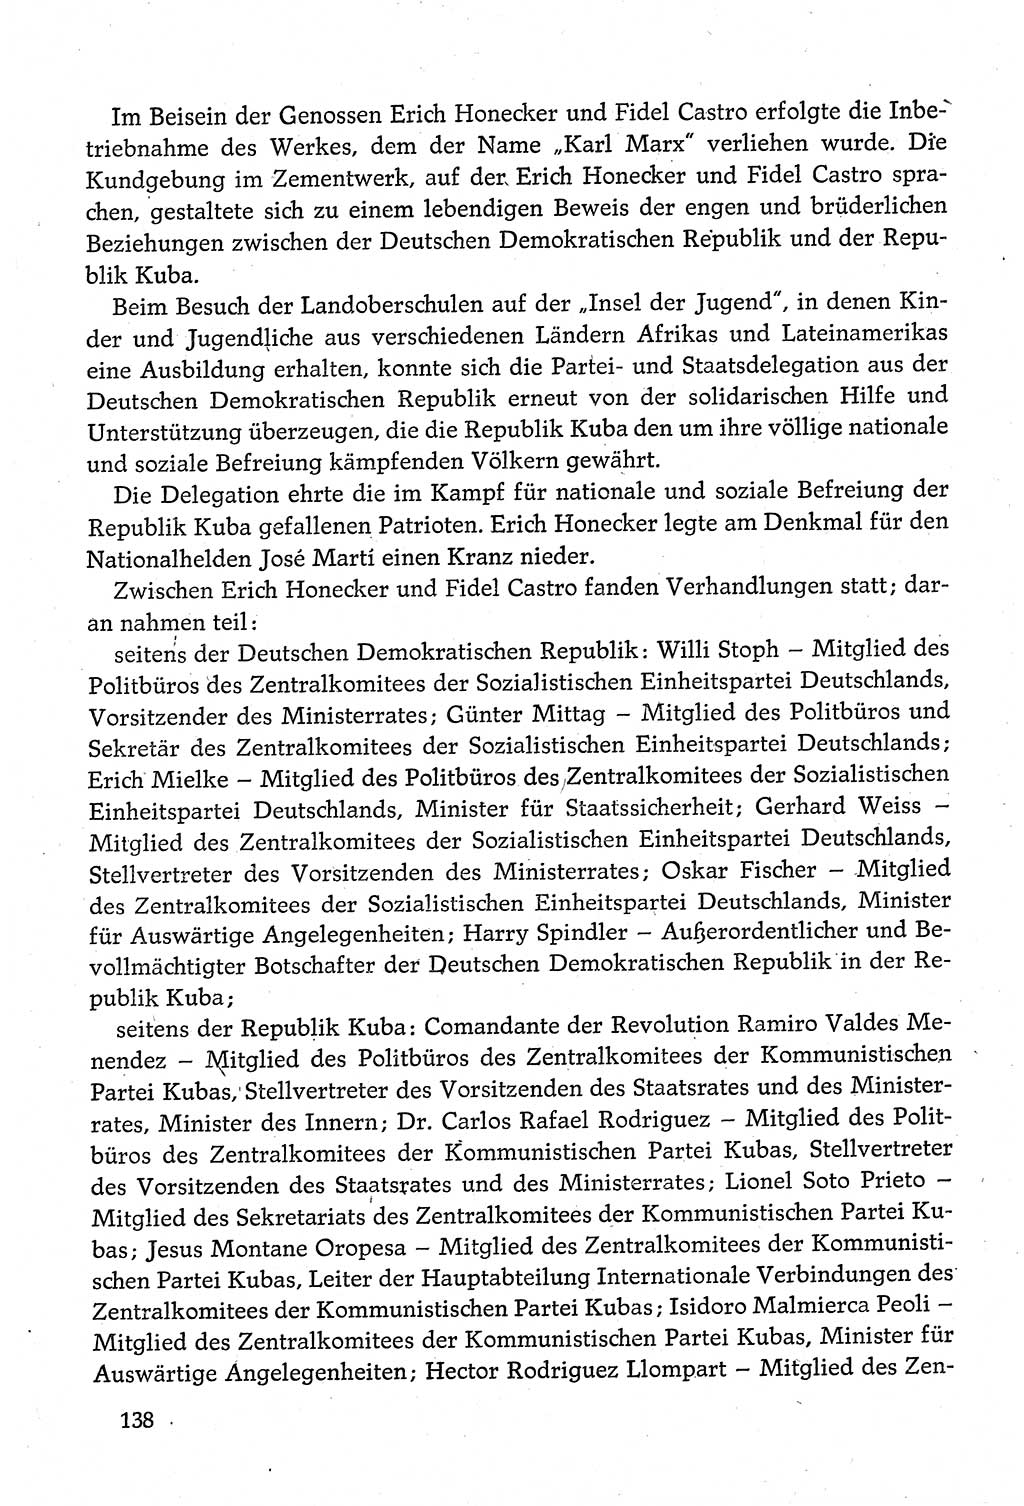 Dokumente der Sozialistischen Einheitspartei Deutschlands (SED) [Deutsche Demokratische Republik (DDR)] 1980-1981, Seite 138 (Dok. SED DDR 1980-1981, S. 138)